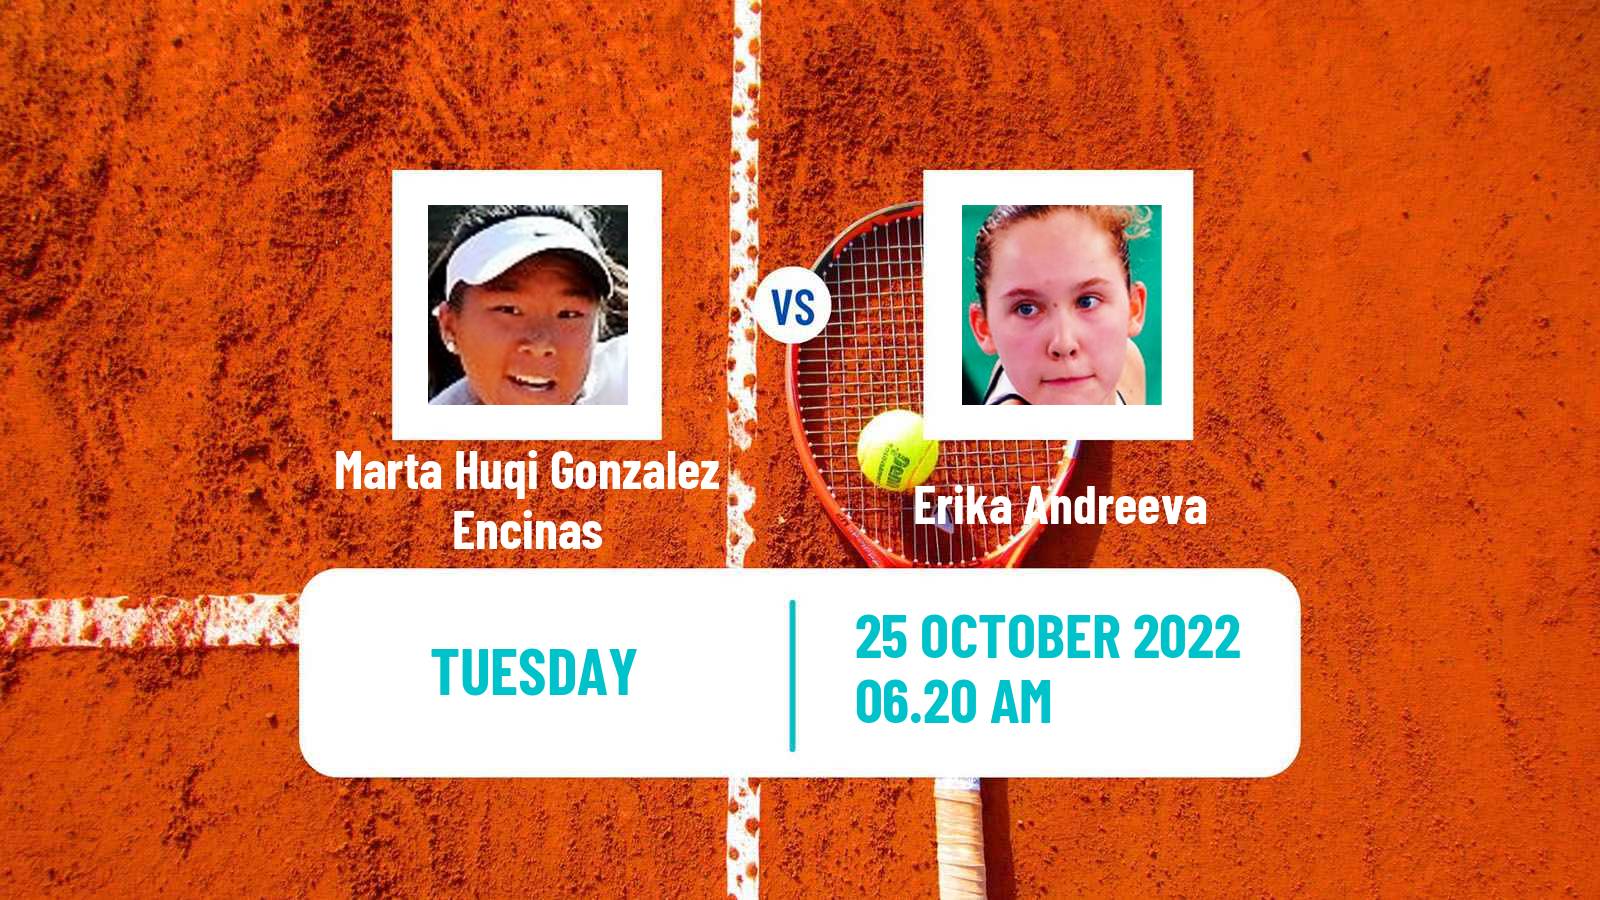 Tennis ITF Tournaments Marta Huqi Gonzalez Encinas - Erika Andreeva